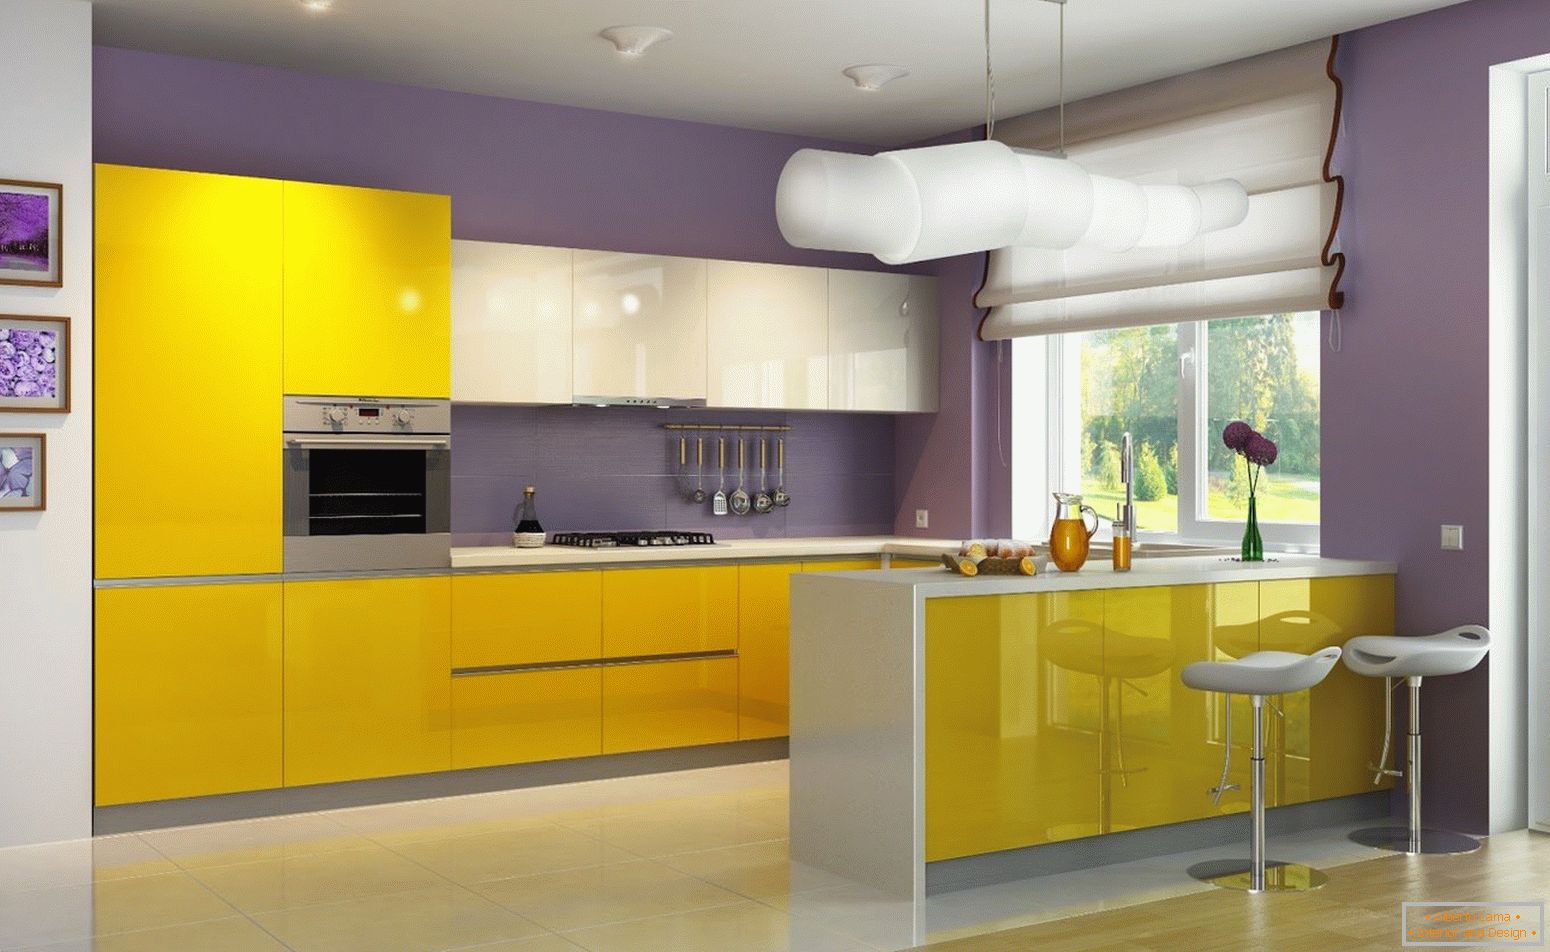 La combinazione di fiori gialli e viola in cucina